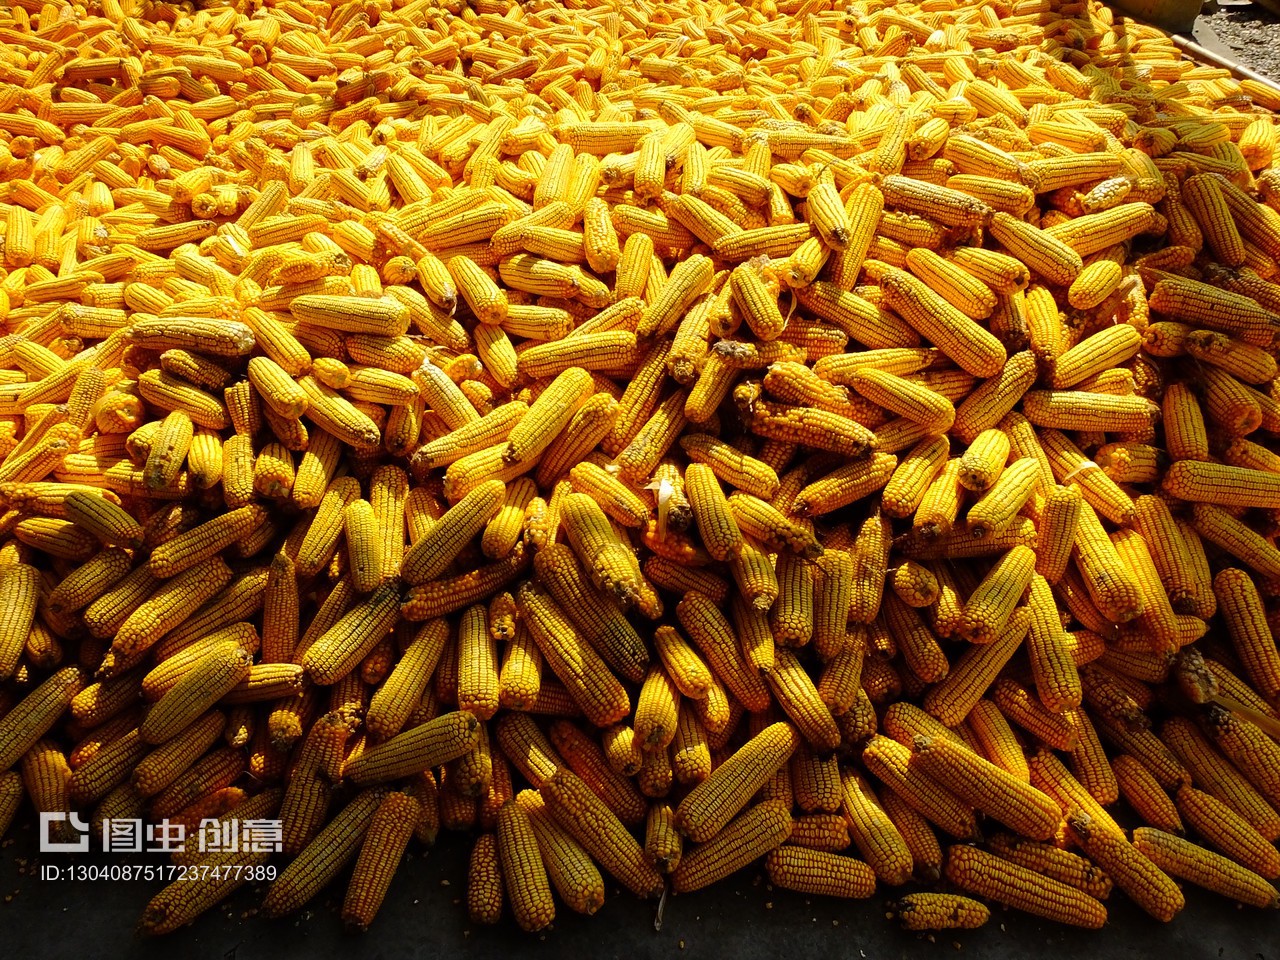 2021年9月12日,湖北宜昌市夷陵区分乡镇插旗村,农家晾晒农产品玉米,呈现丰收景象。